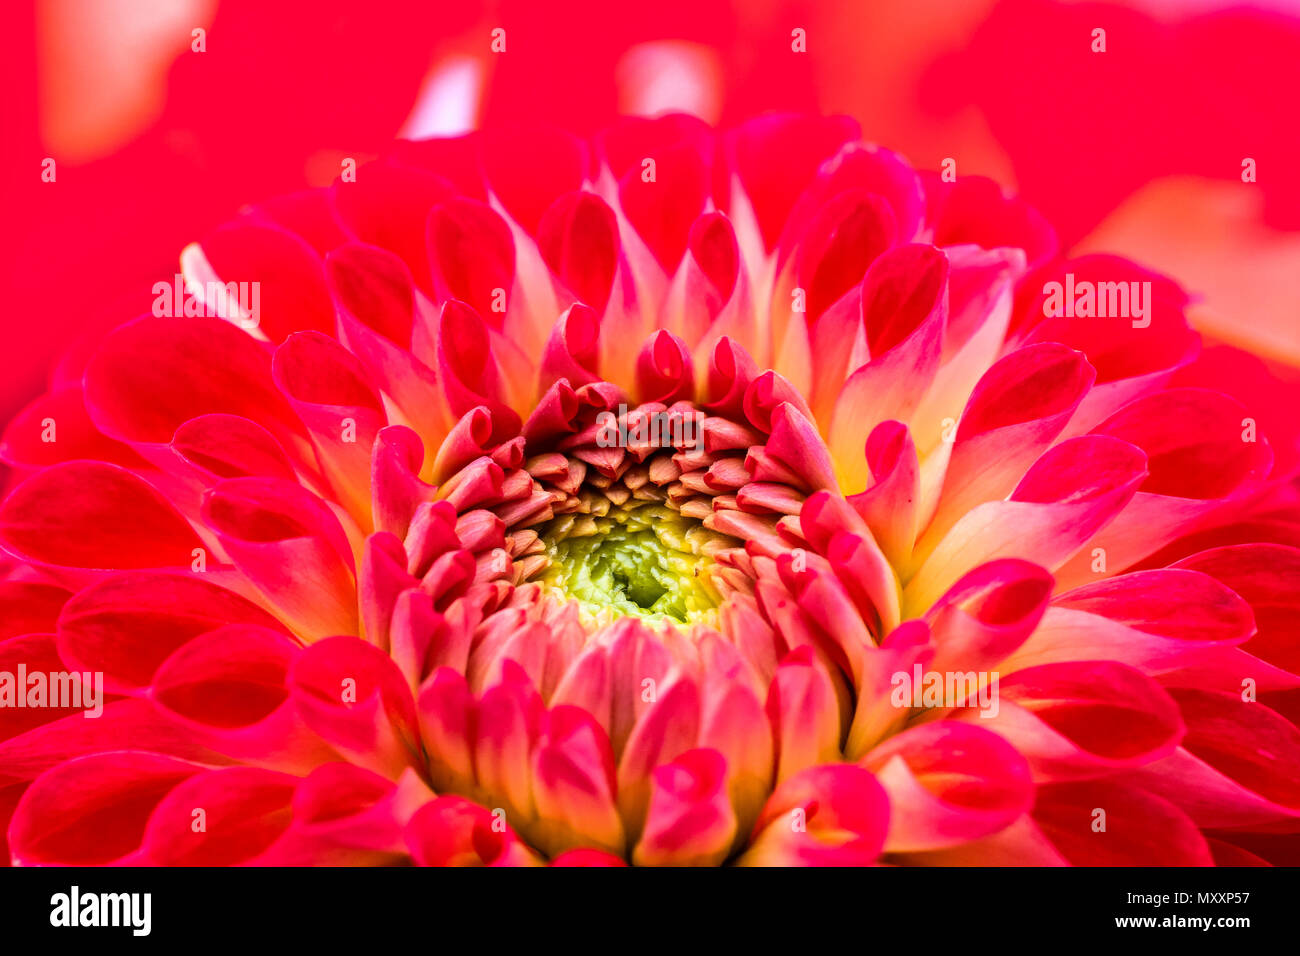 Rot, Rosa und gelbe Dahlie Blume mit gelben und grünen Zentrum nahe bis Makro Foto. Farbe Foto Betonung der Helle rötliche Farben und abstrakten Stockfoto